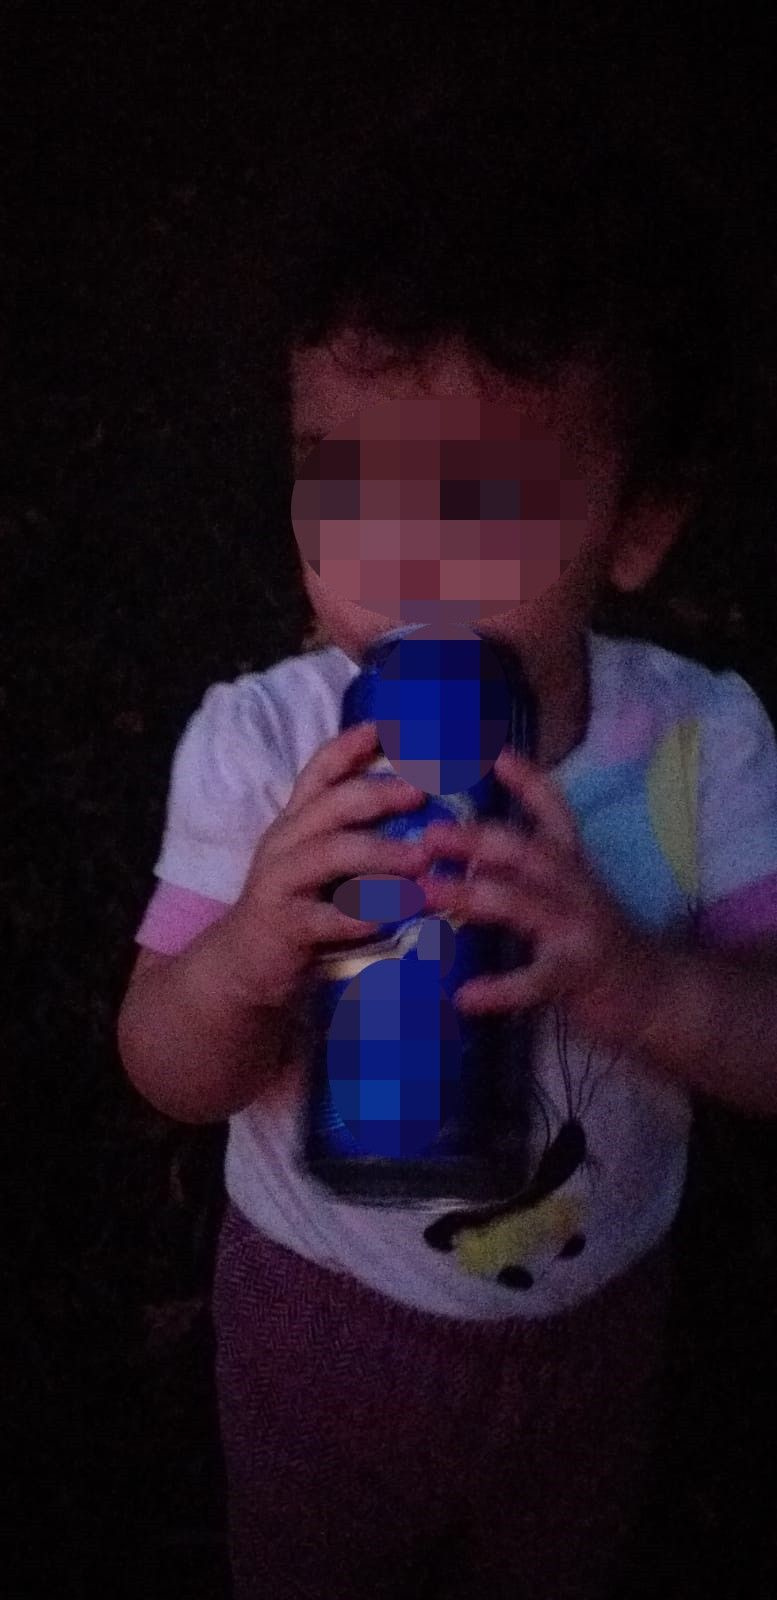 Böyle anne mi olur! 3 yaşındaki kızına alkol içirip fotoğrafını çektirdi! Şaka amaçlıymış